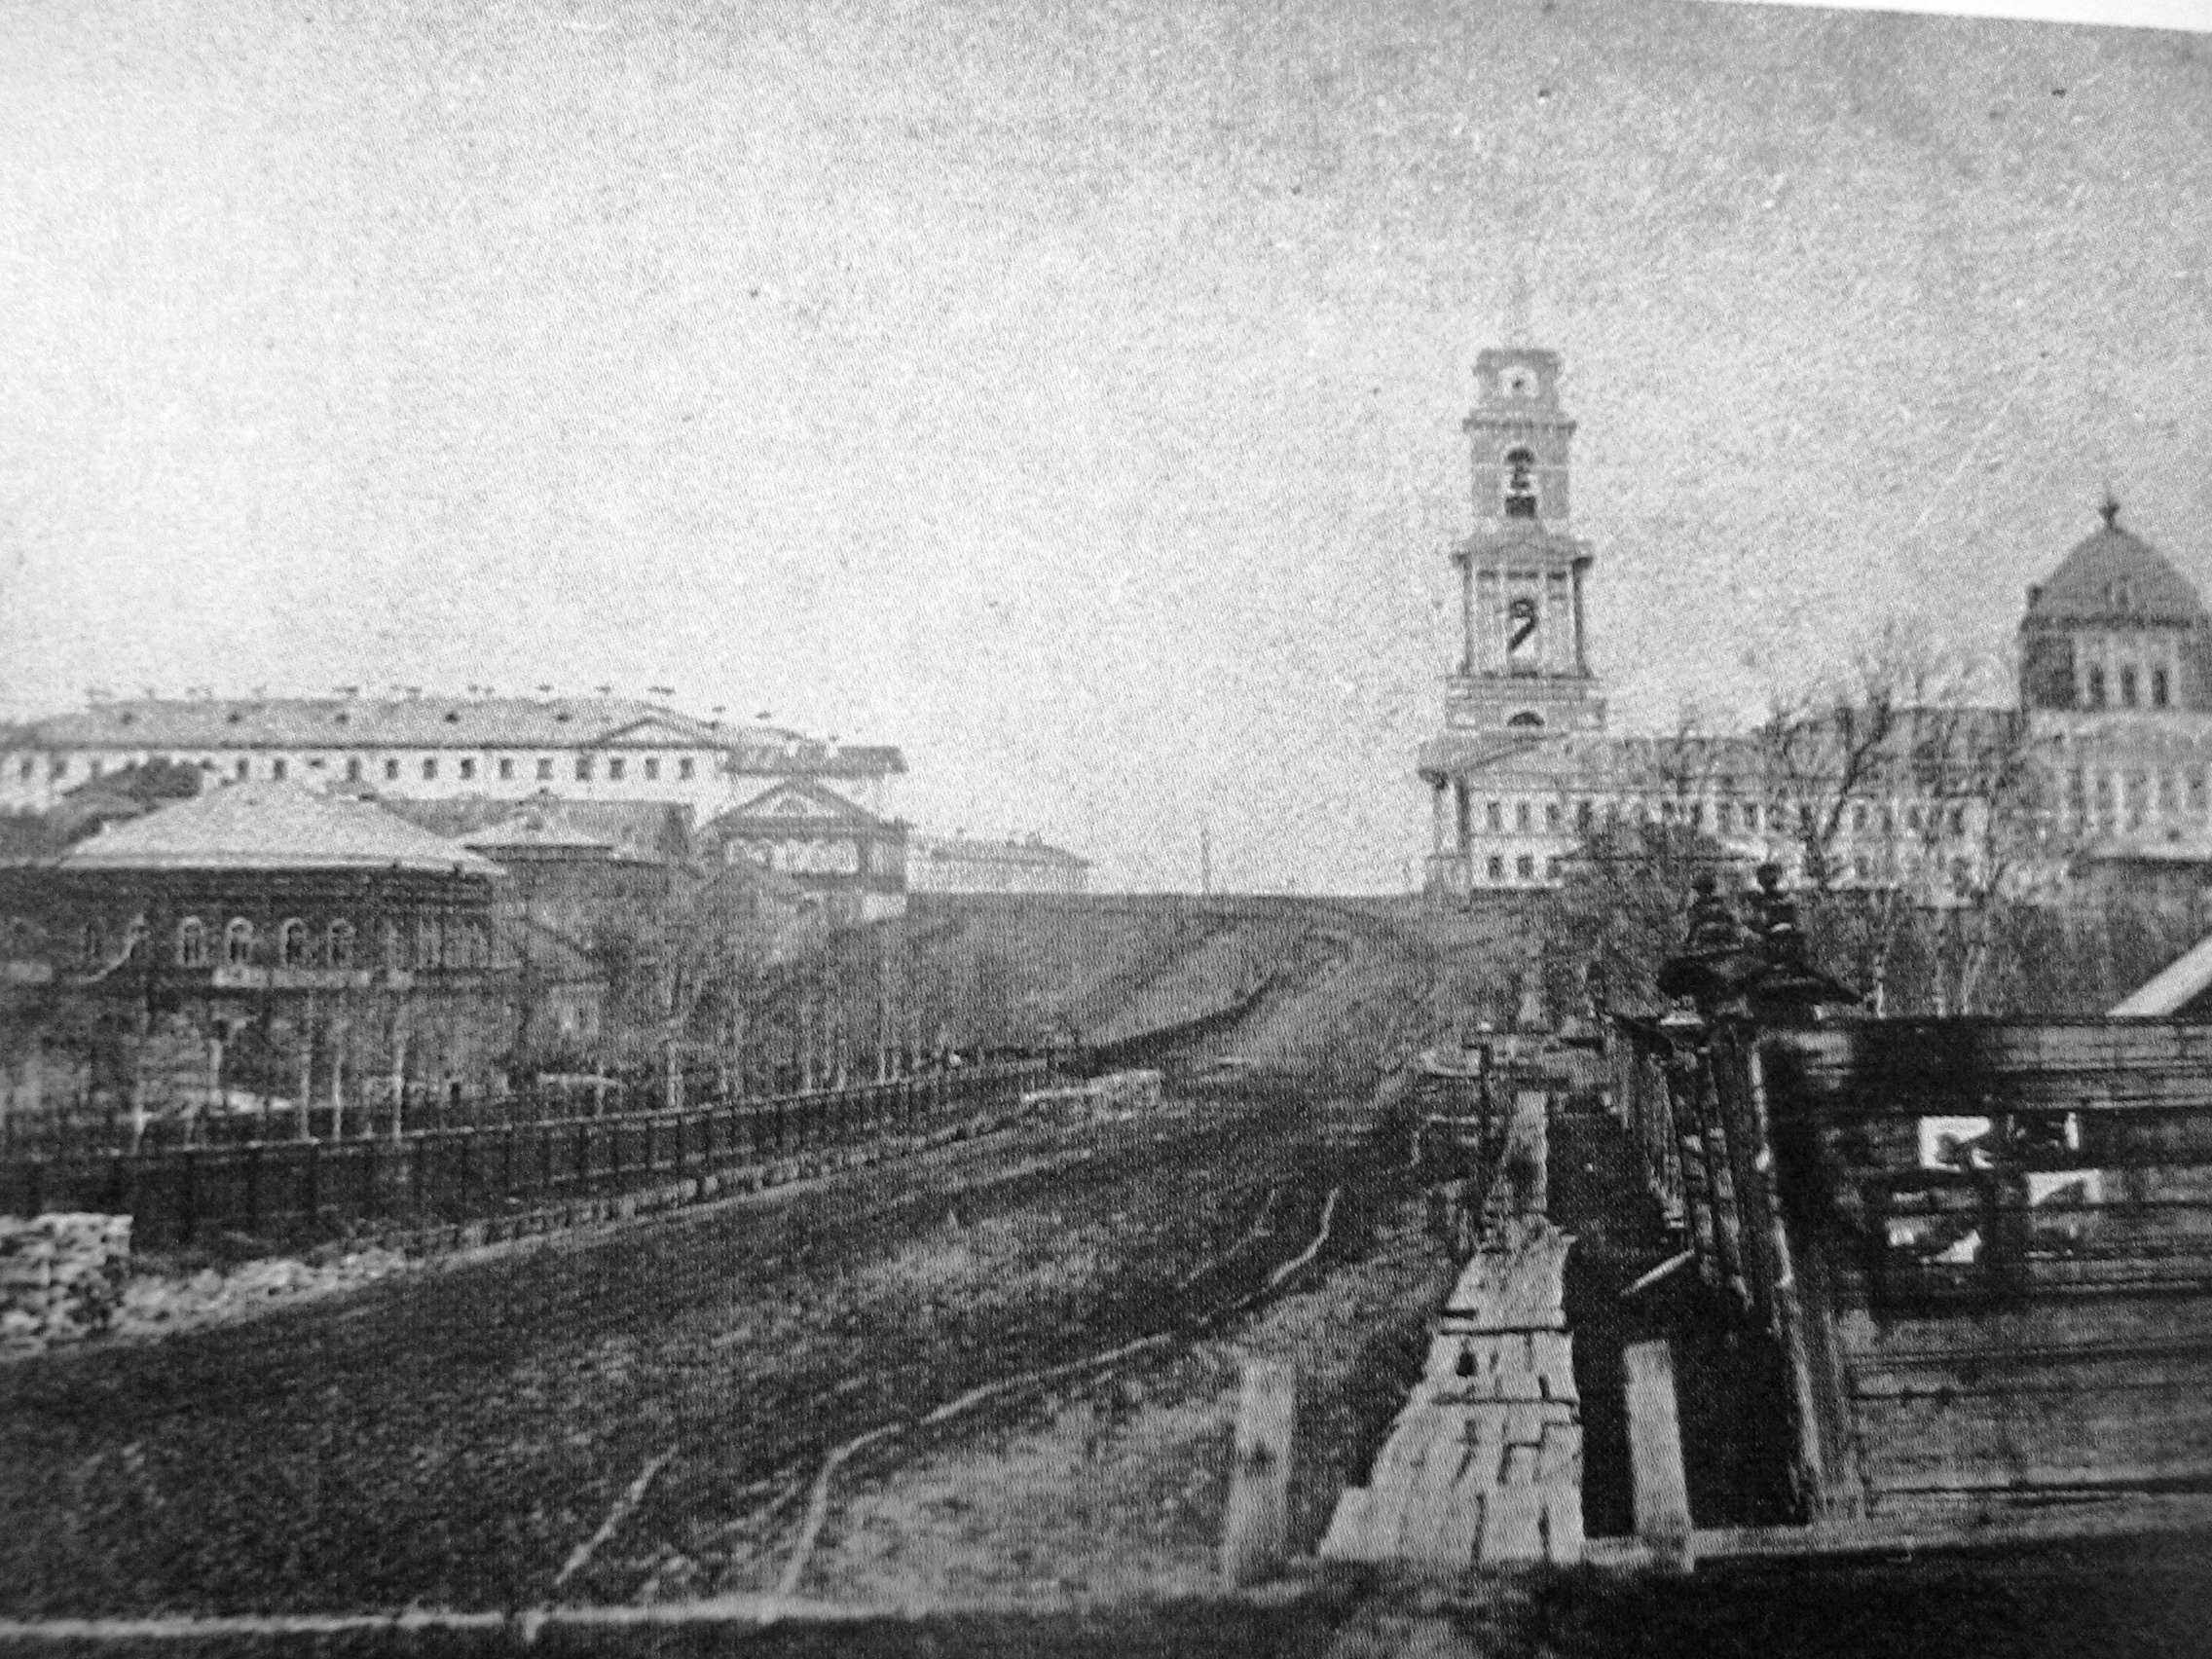 фото пермь общий вид 1910 год